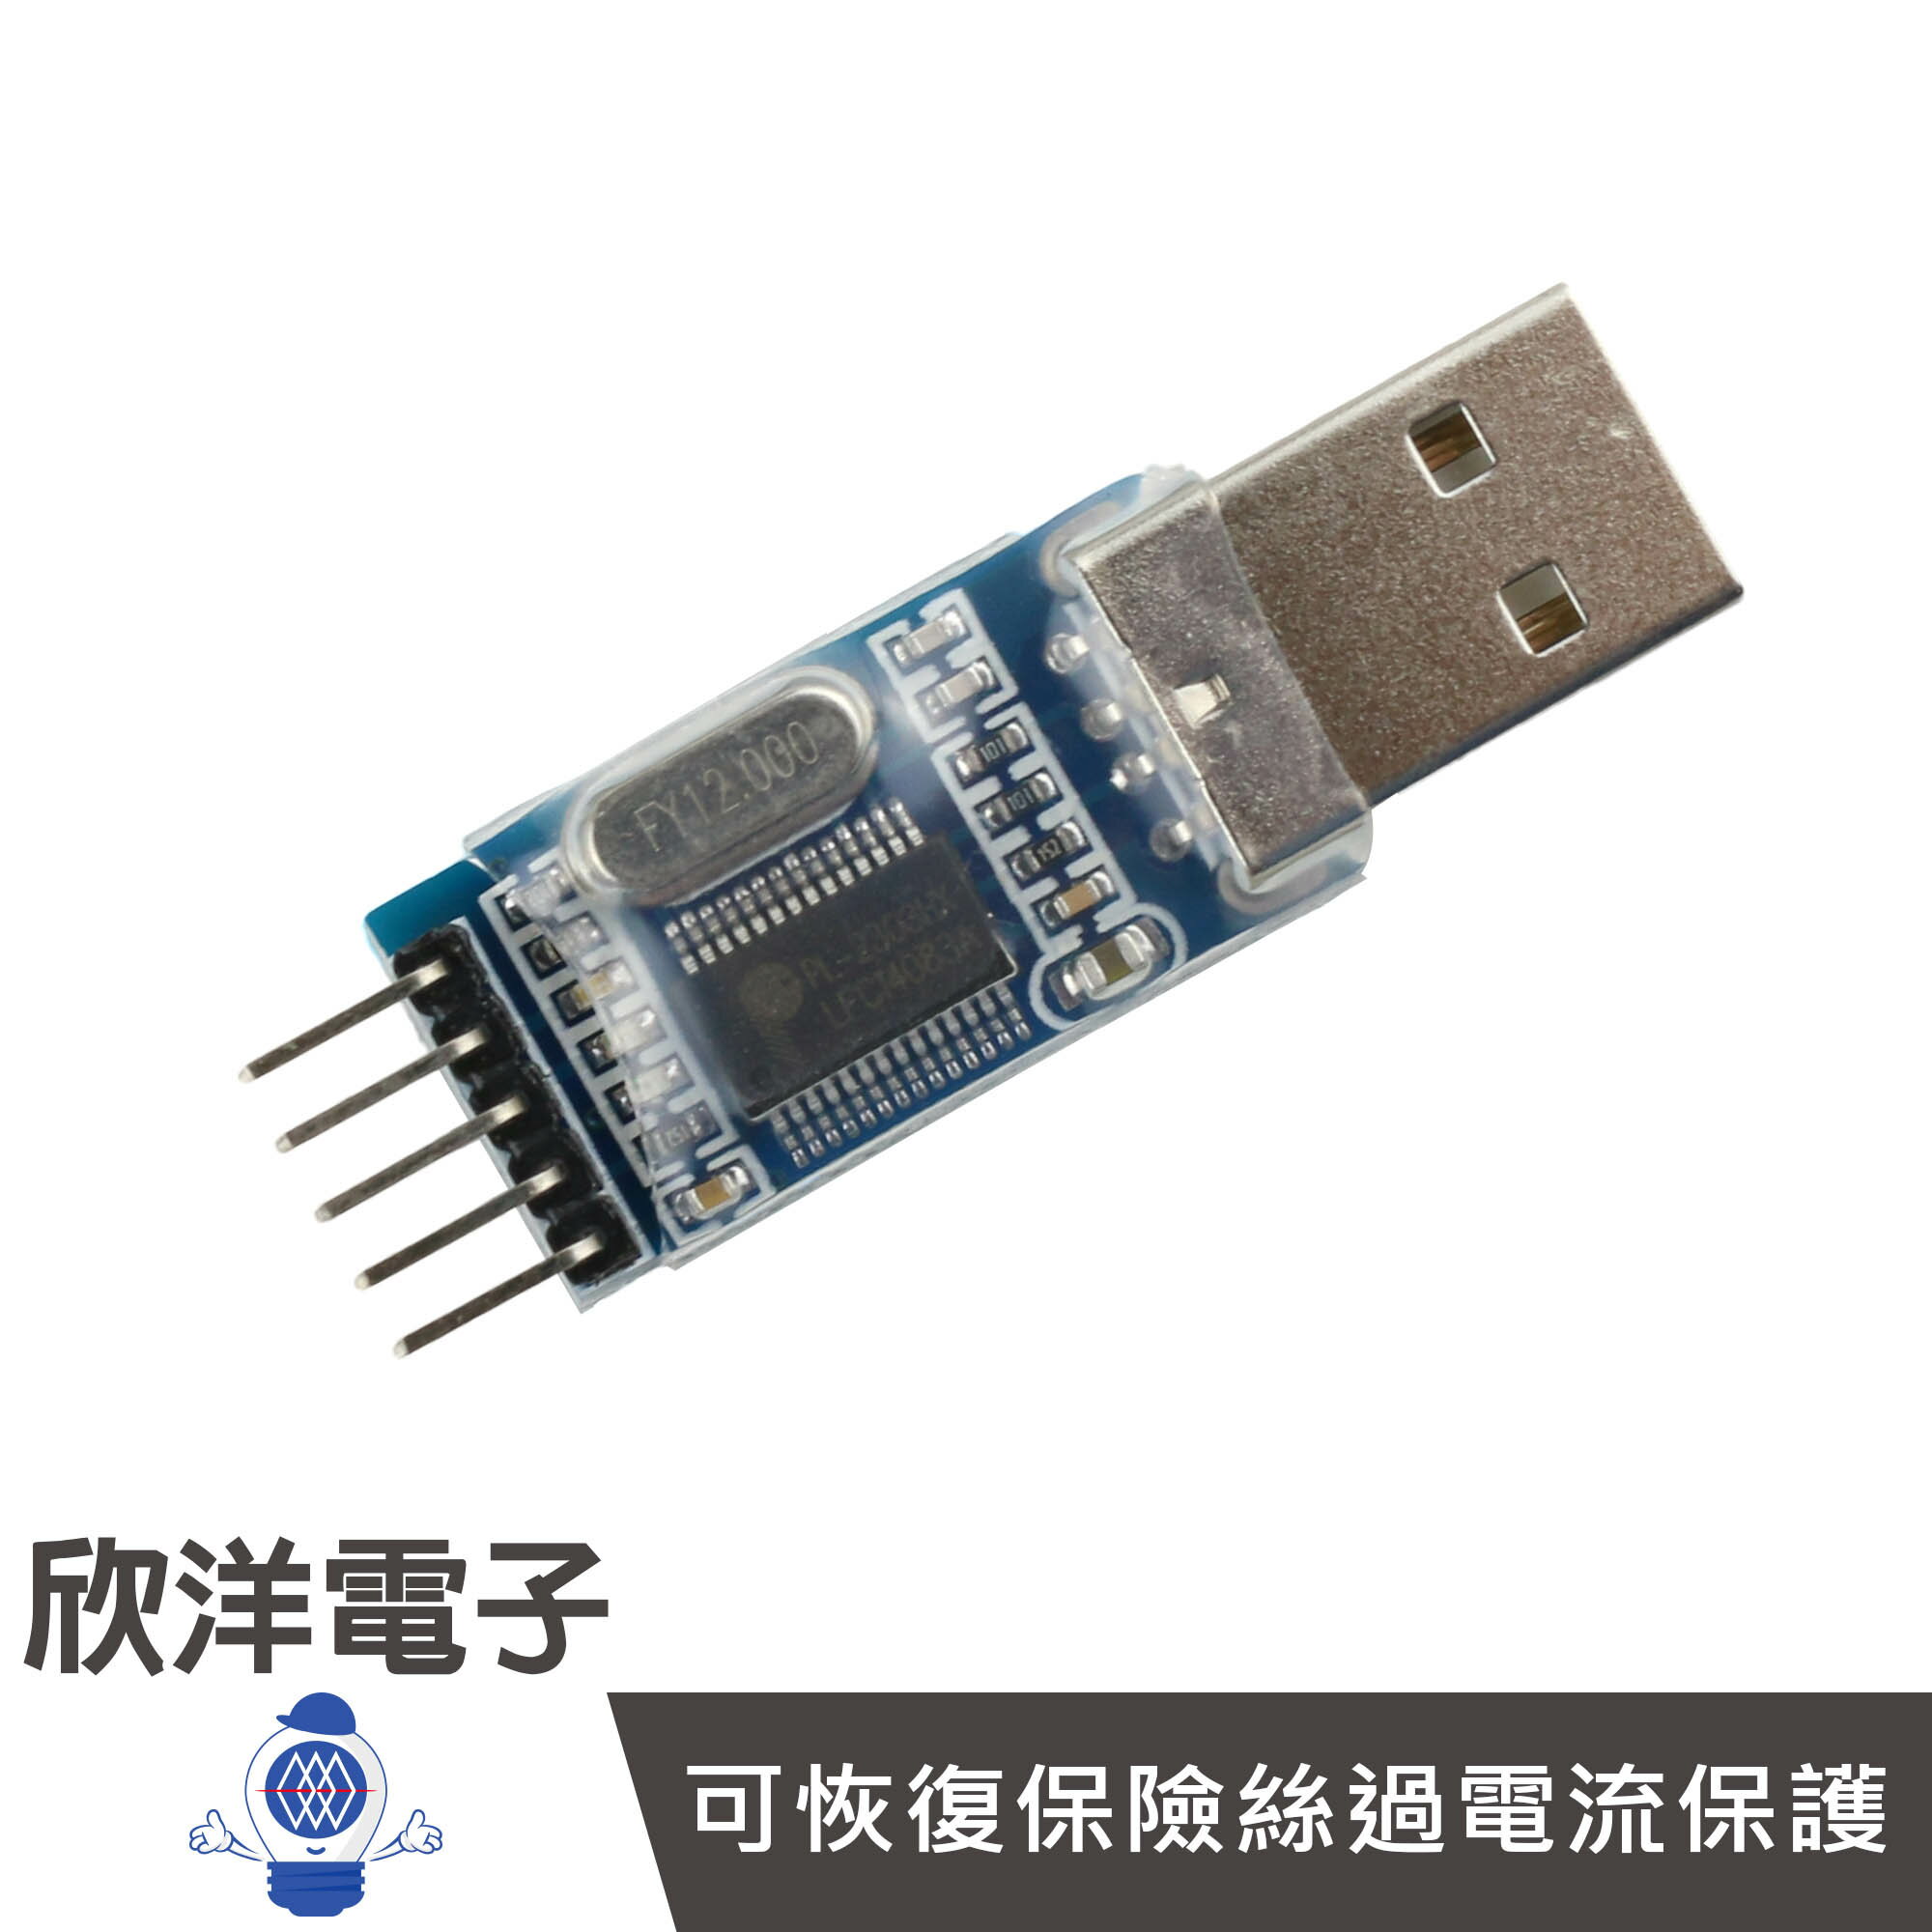 ※ 欣洋電子 ※ PL 2303 USB to TTL 訊號轉換模組(0801) /實驗室、學生模組、電子材料、電子工程、適用Arduino